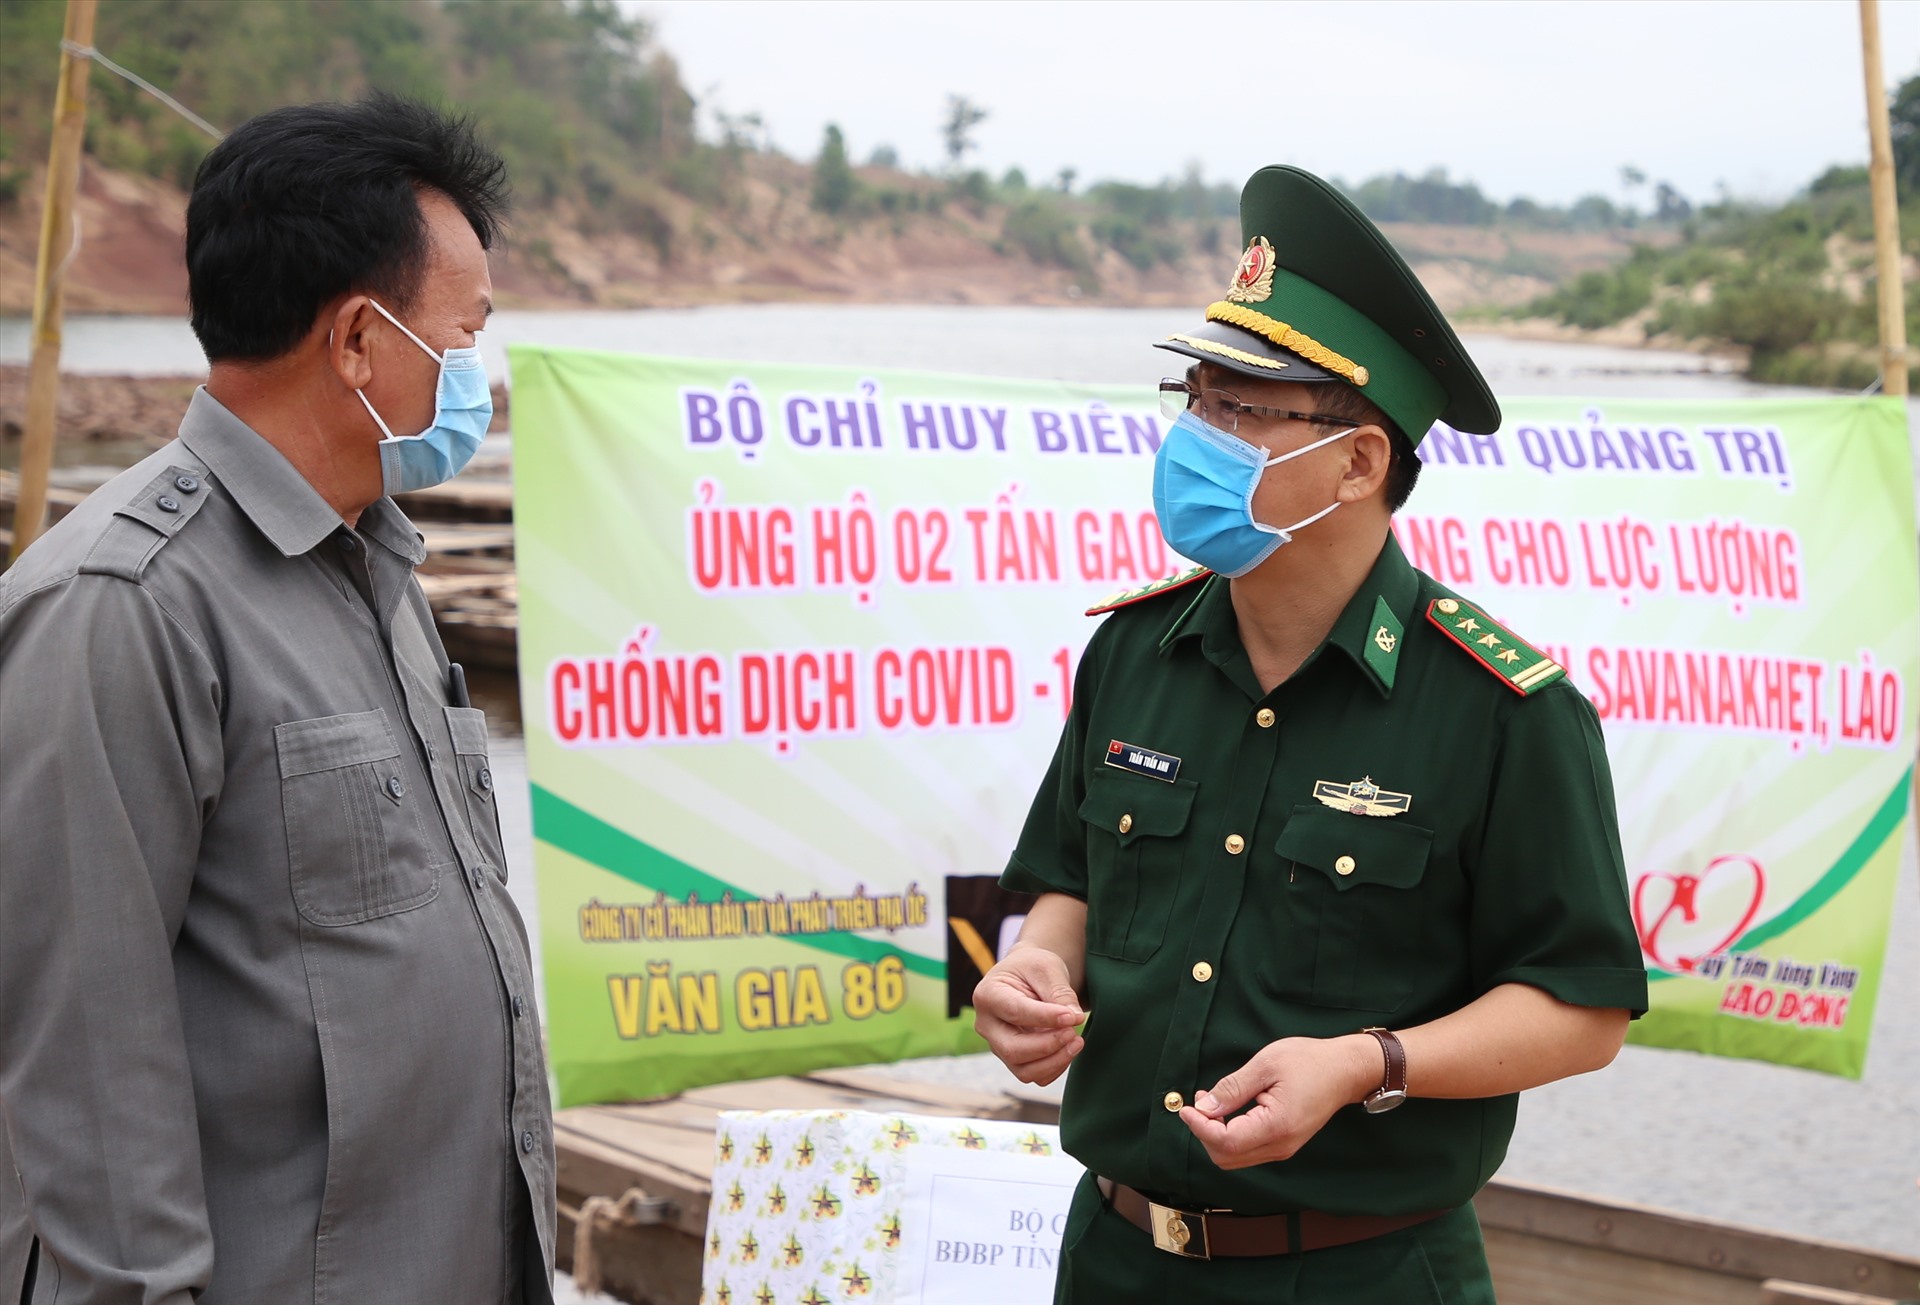 Ông TengOn Chathalanong – Phó Chủ tịch huyện Mường Nòng (bìa phải ảnh) nói rằng, sẽ phối hợp với cơ quan chức năng tỉnh Quảng Trị để làm tốt việc xuất nhập cảnh trái phép ở biên giới.